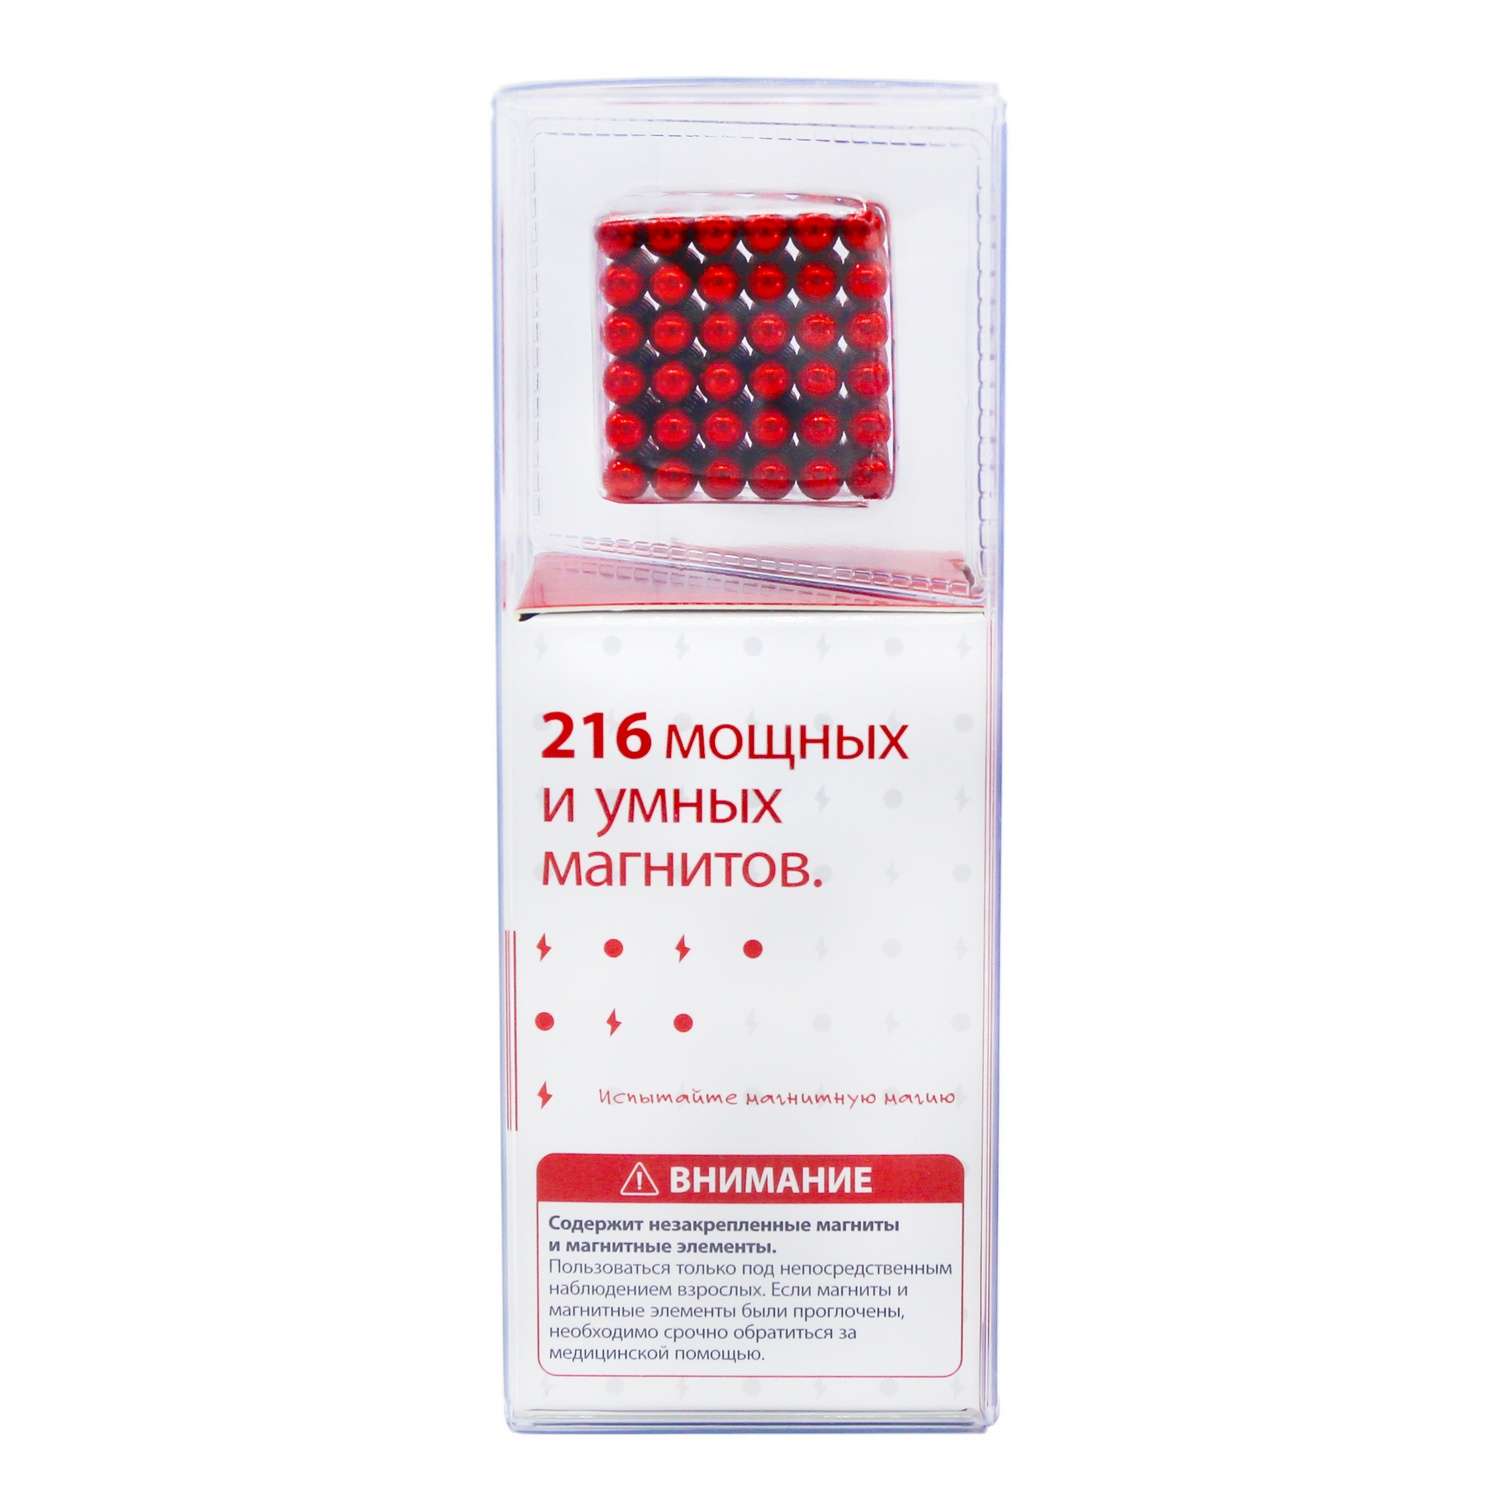 Головоломка магнитная Magnetic Cube красный неокуб 216 элементов - фото 4